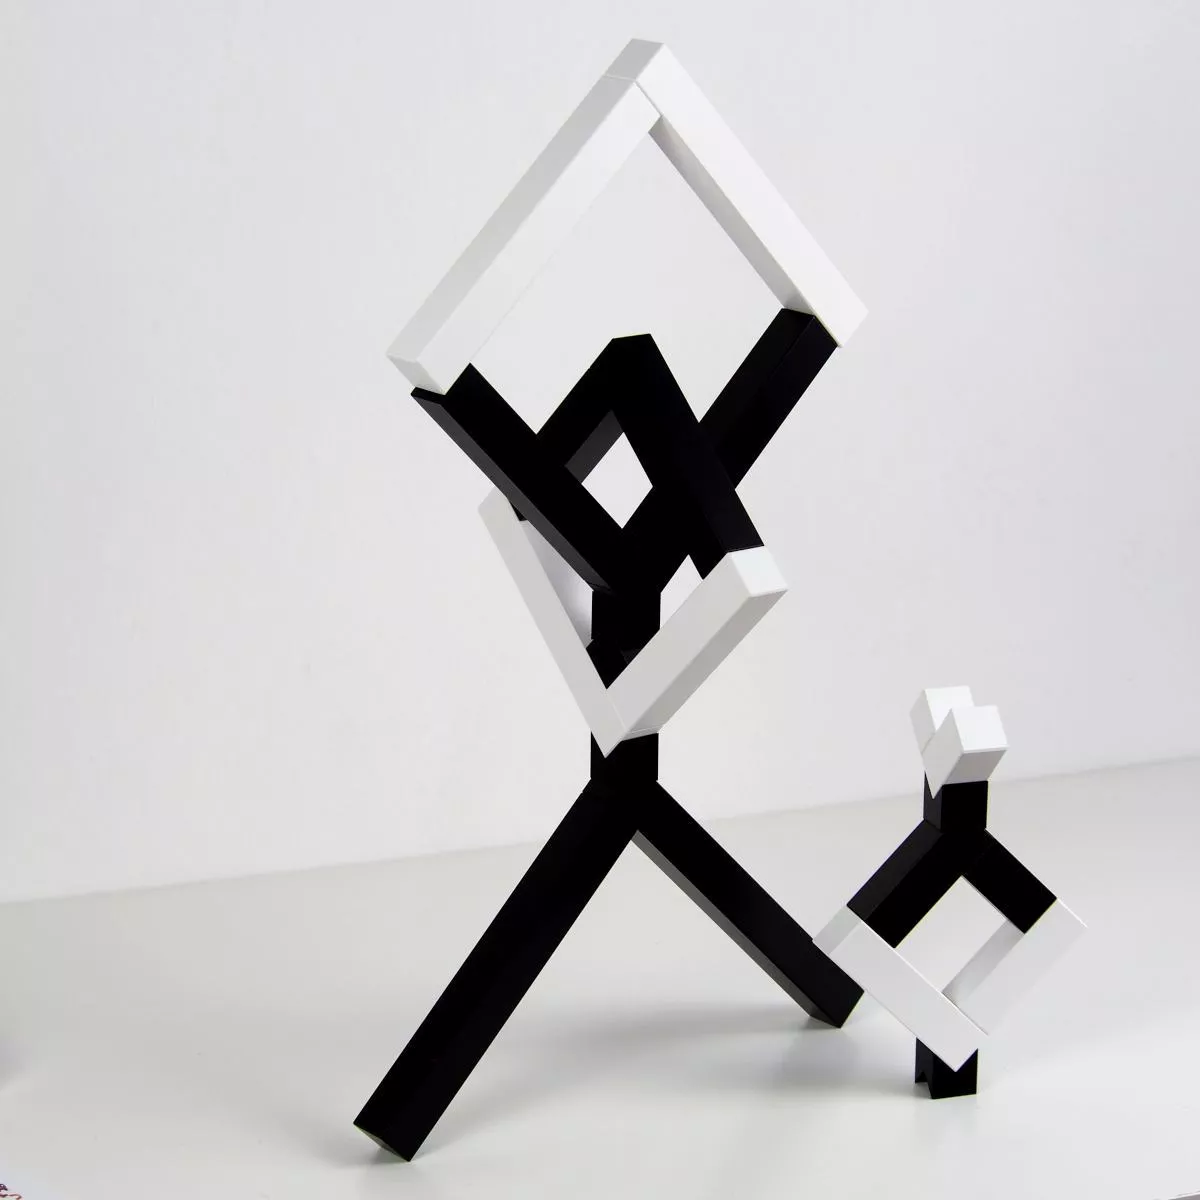 Angular (Schwarz-Weiß) – Originales Naef-Spiel aus Holz für kreative Konstruktionen